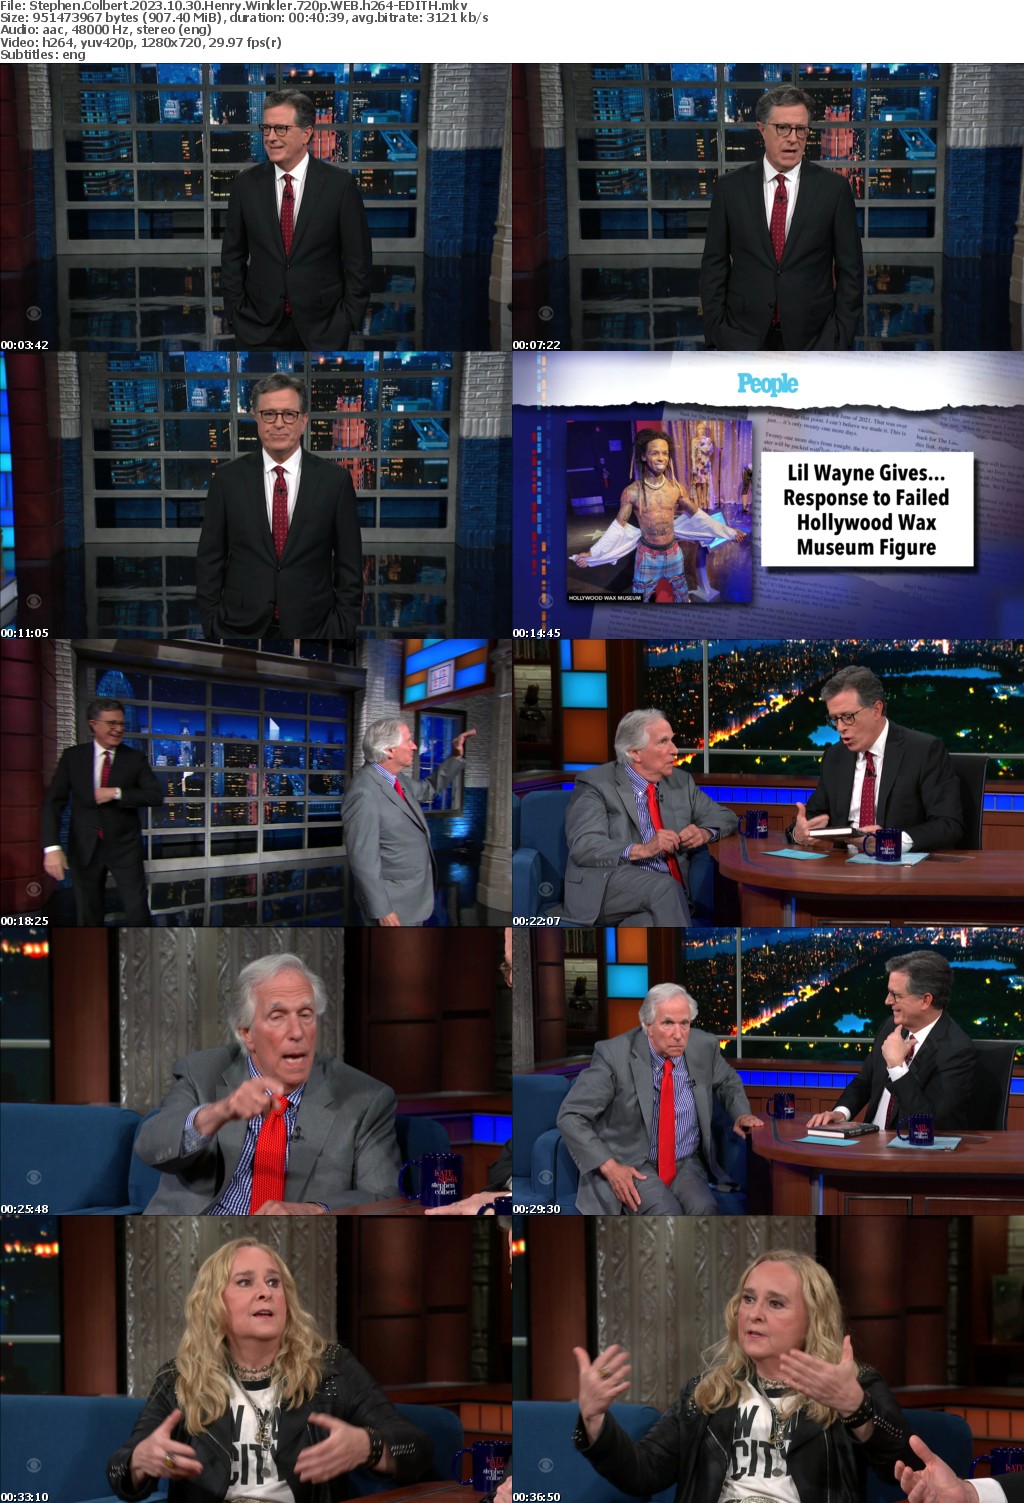 Stephen Colbert 2023 10 30 Henry Winkler 720p WEB h264-EDITH